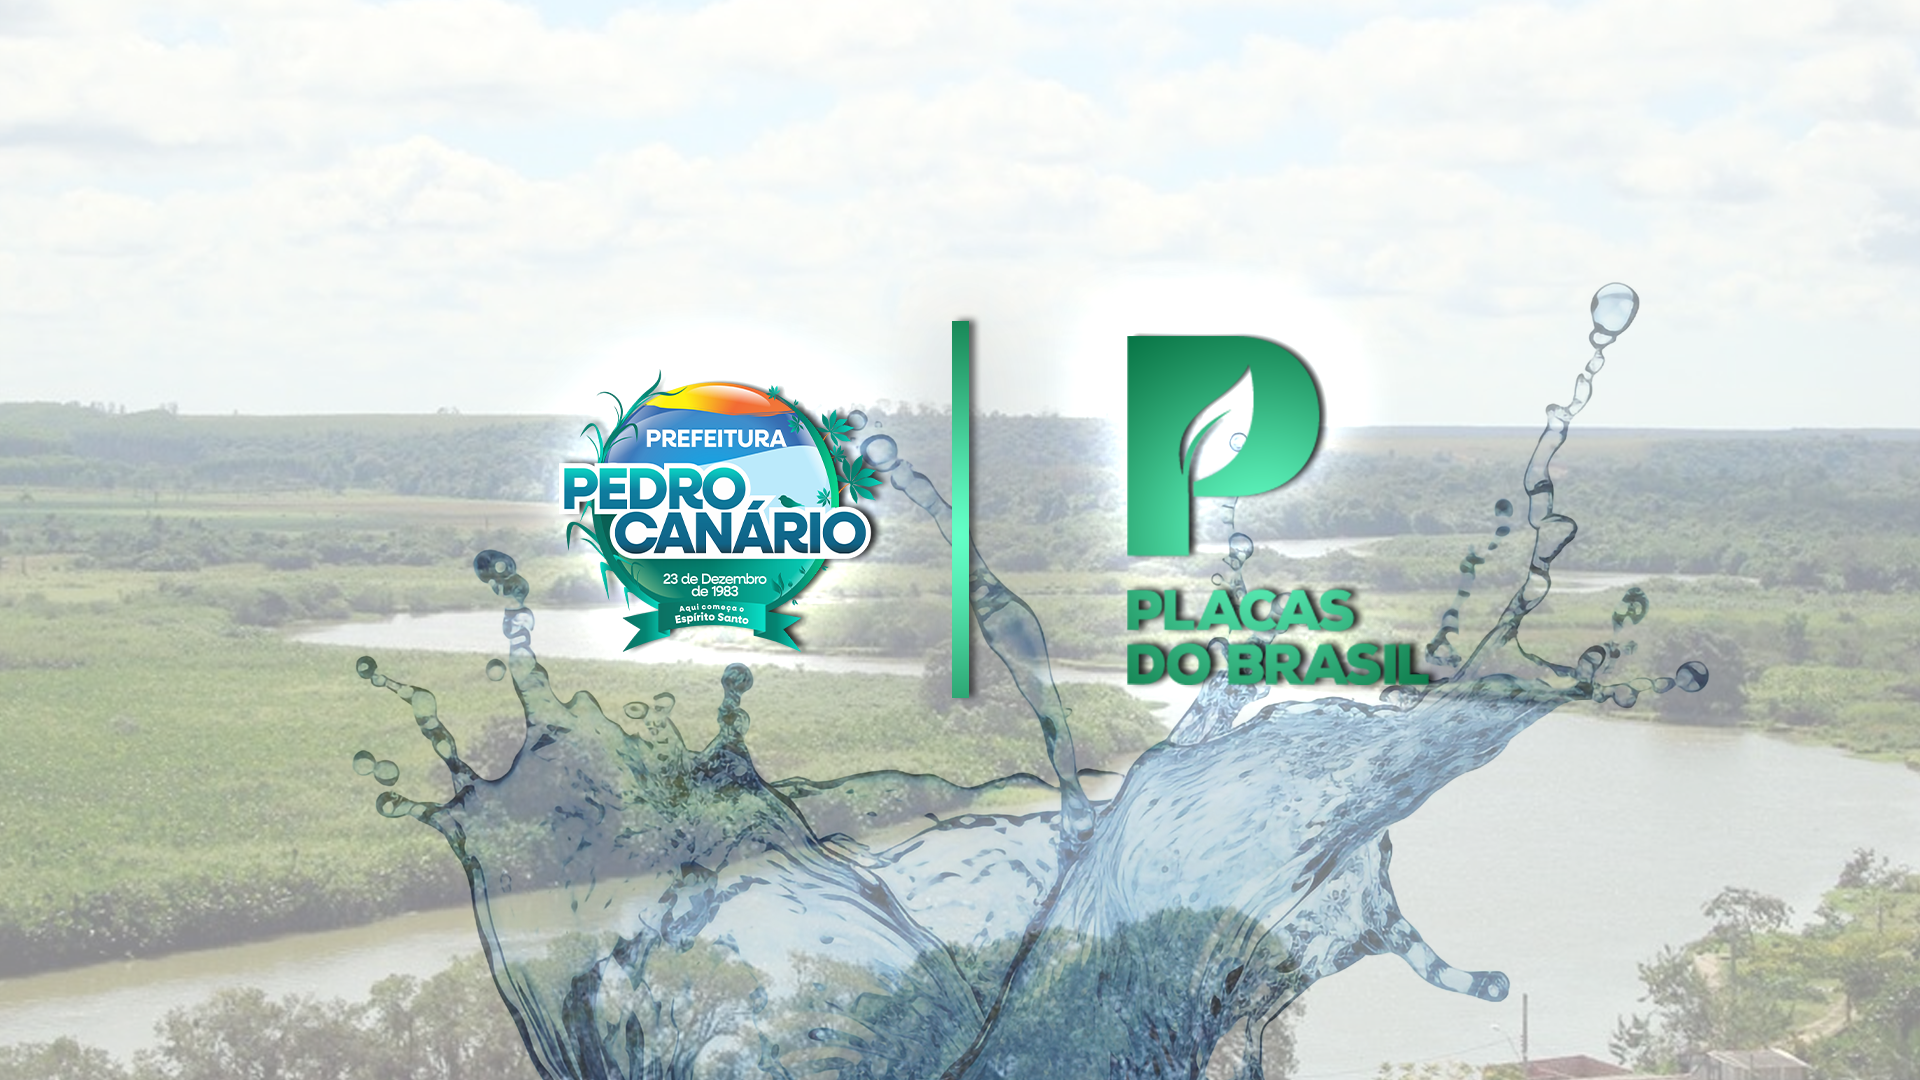 Prefeitura de Pedro Canário e Placas do Brasil unem esforços para conscientizar alunos da rede municipal de ensino